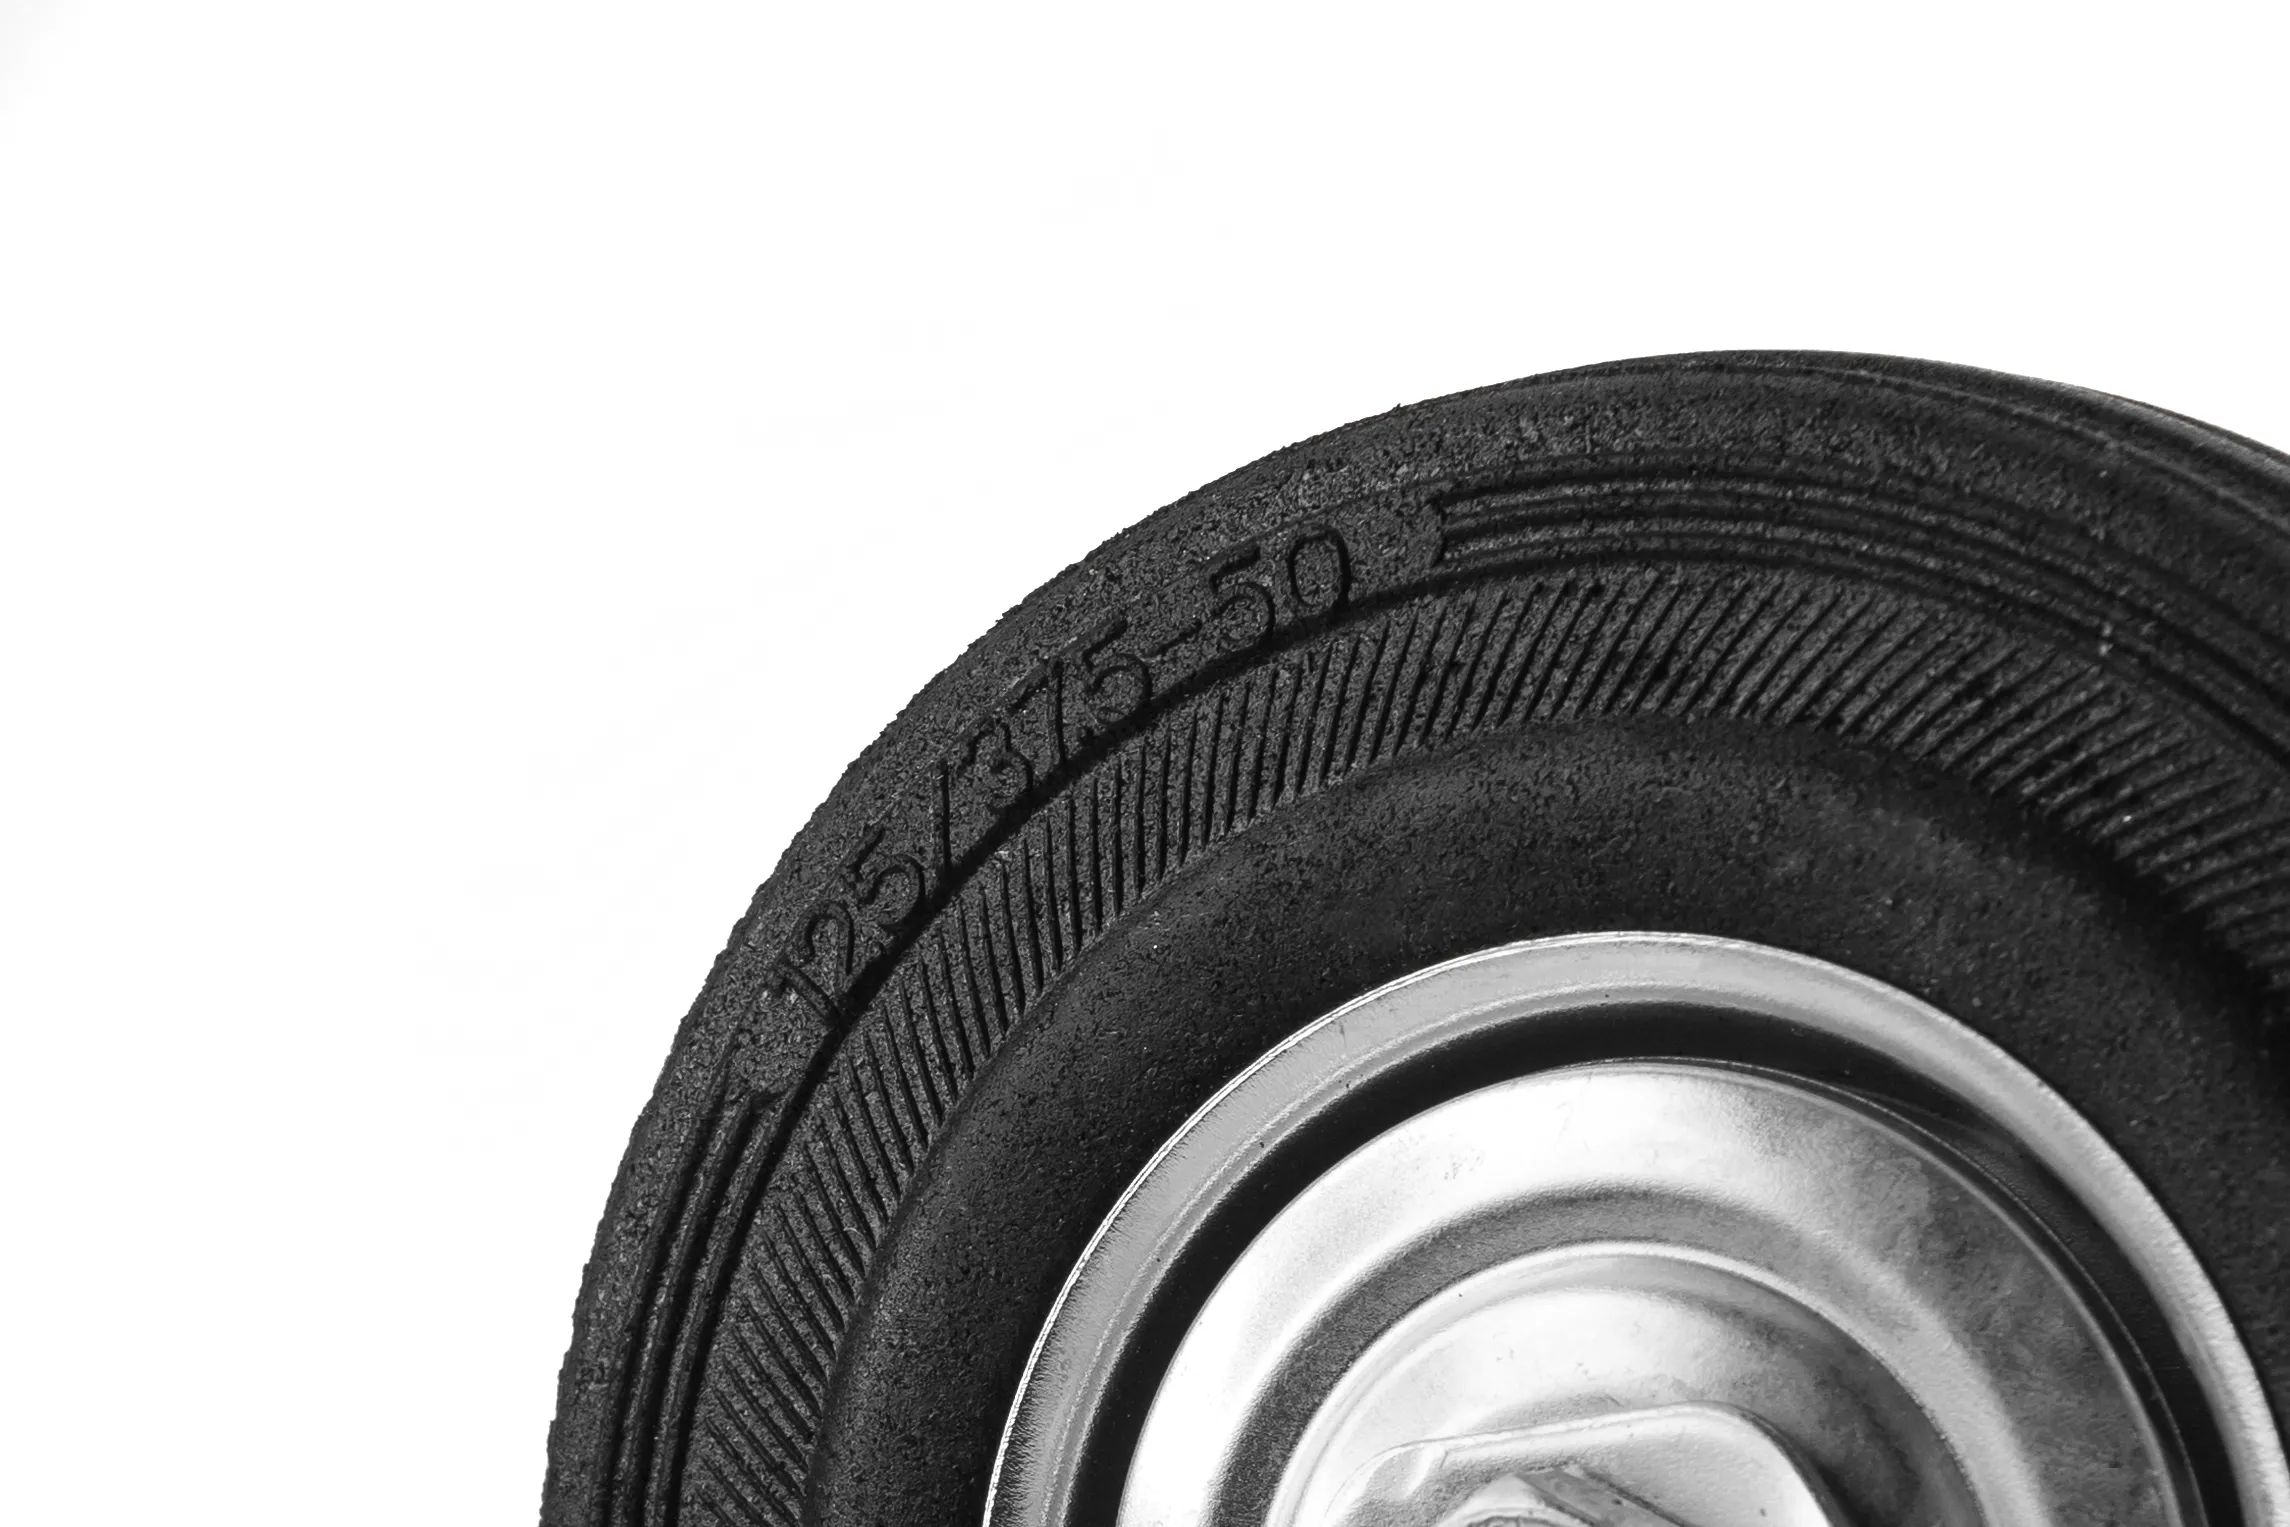 Промышленное колесо, диаметр 125мм, крепление под болт 12,5мм, поворотное, черная резина, роликовый подшипник - SCh 55